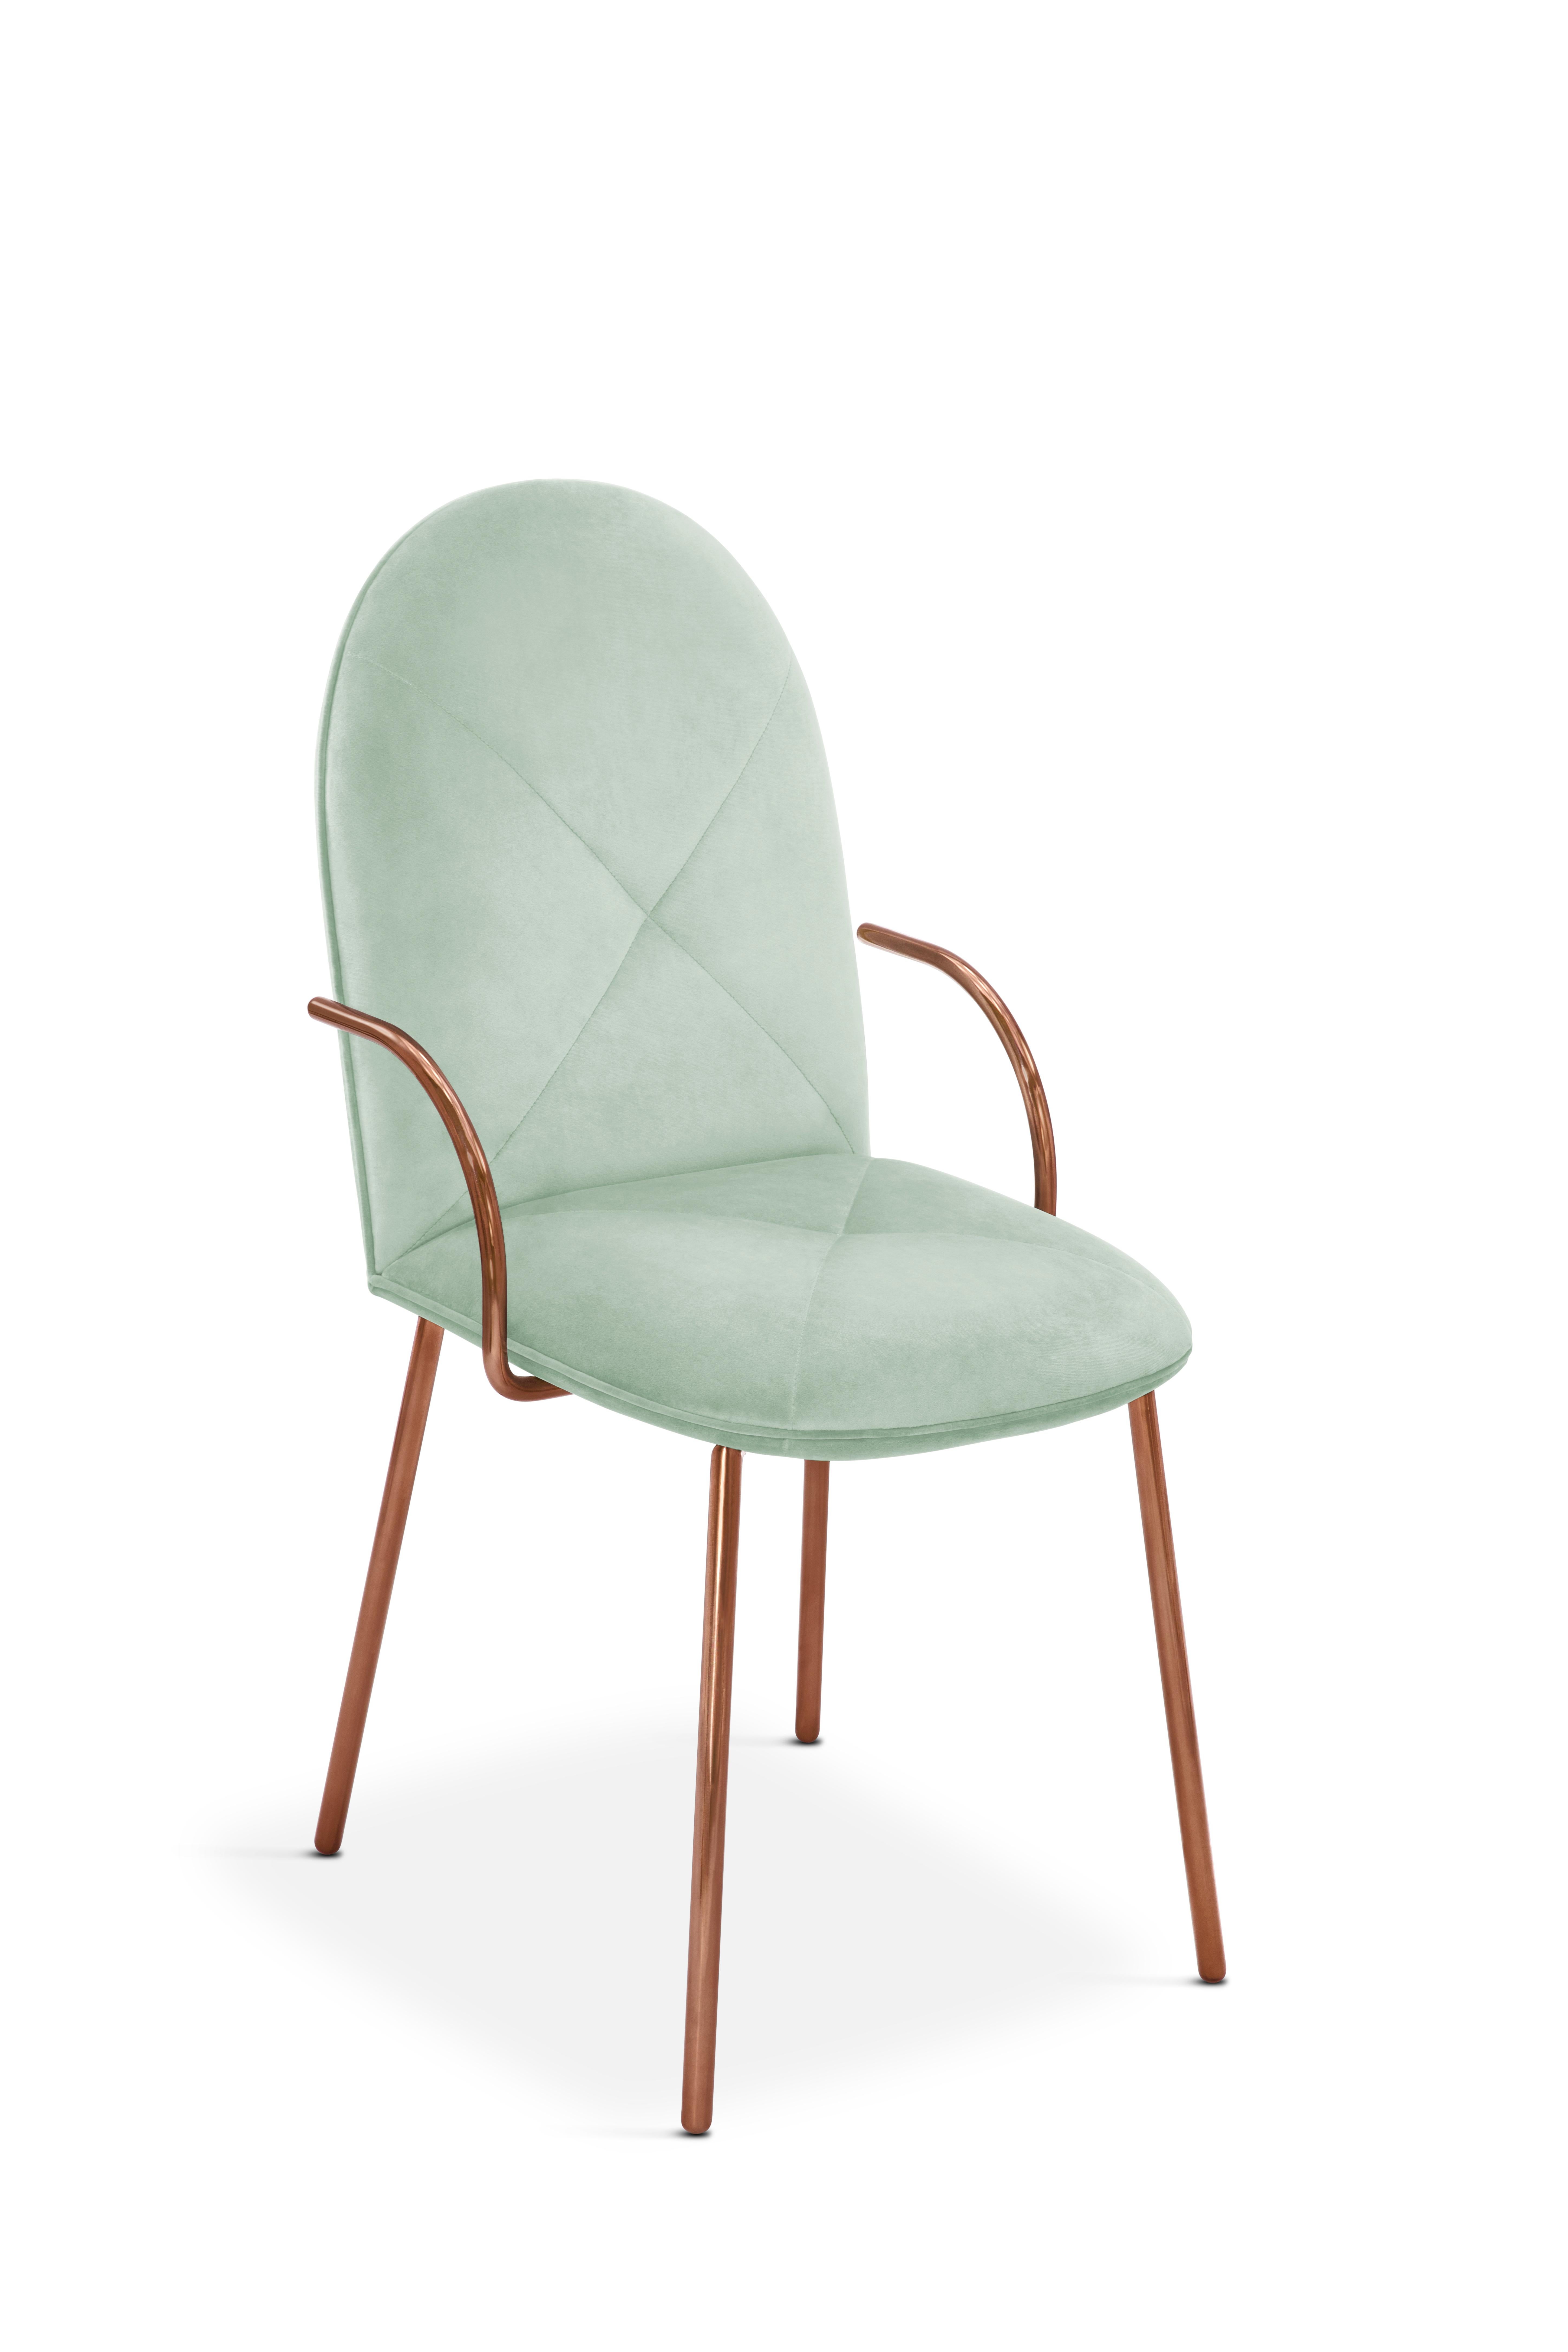 Orion Dining Chair with Plush Mint Green Velvet and Rose Gold Arms von Nika Zupanc ist ein schöner Stuhl aus blassgrünem Samt und roségoldenem Metall. Als Akzent- oder Esszimmerstuhl ist er stilvoll und bequem.

Nika Zupanc, eine auffallend